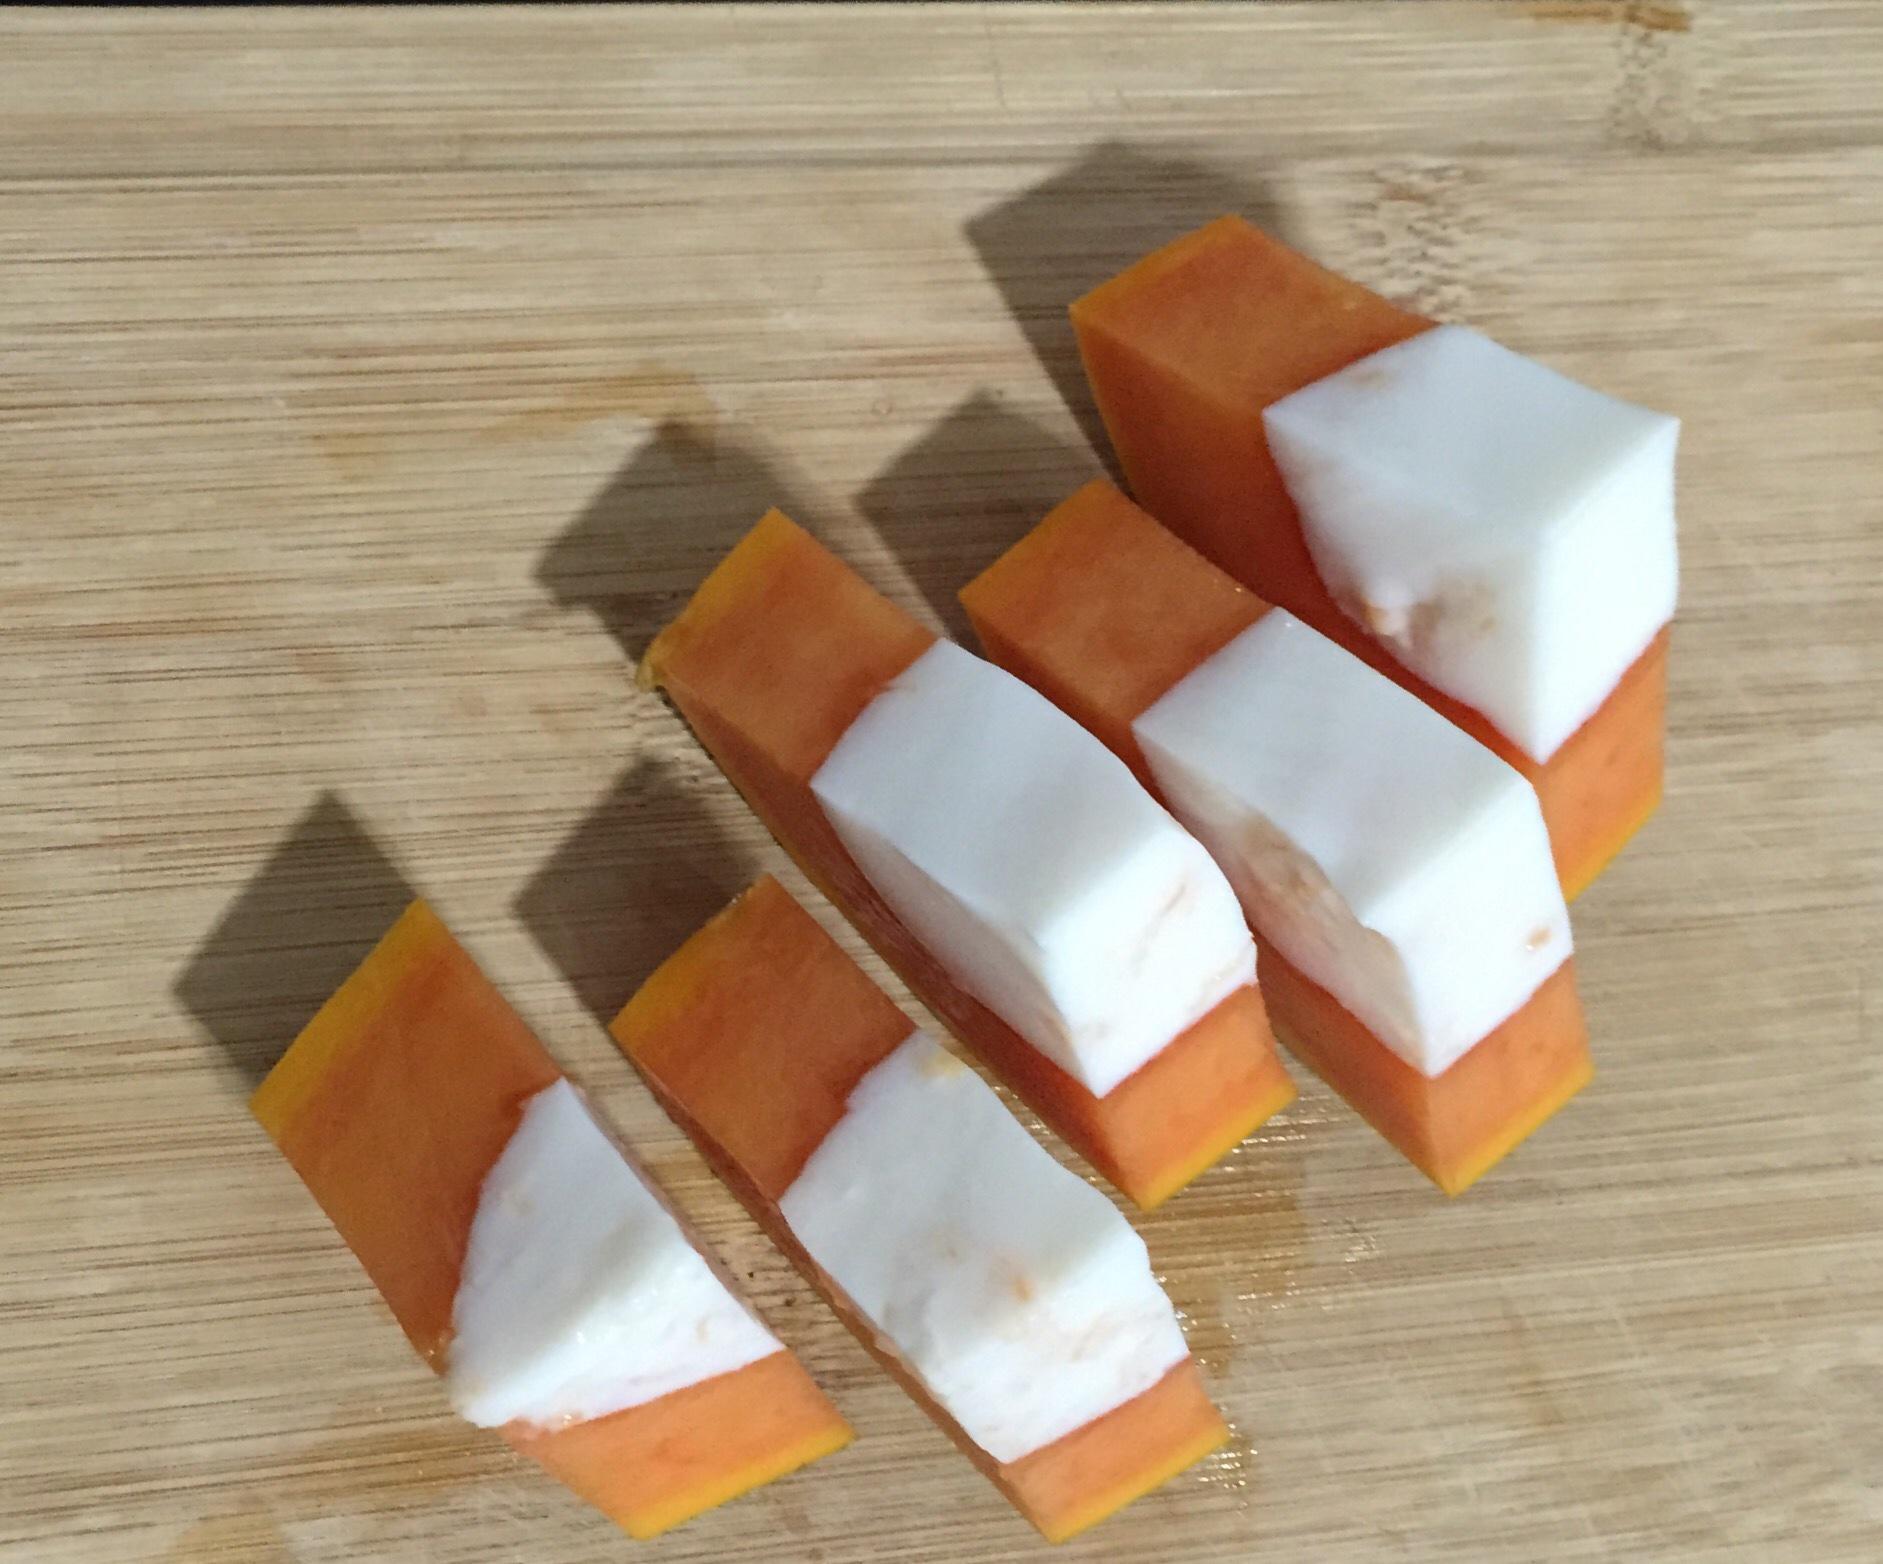 木瓜椰奶冻的做法